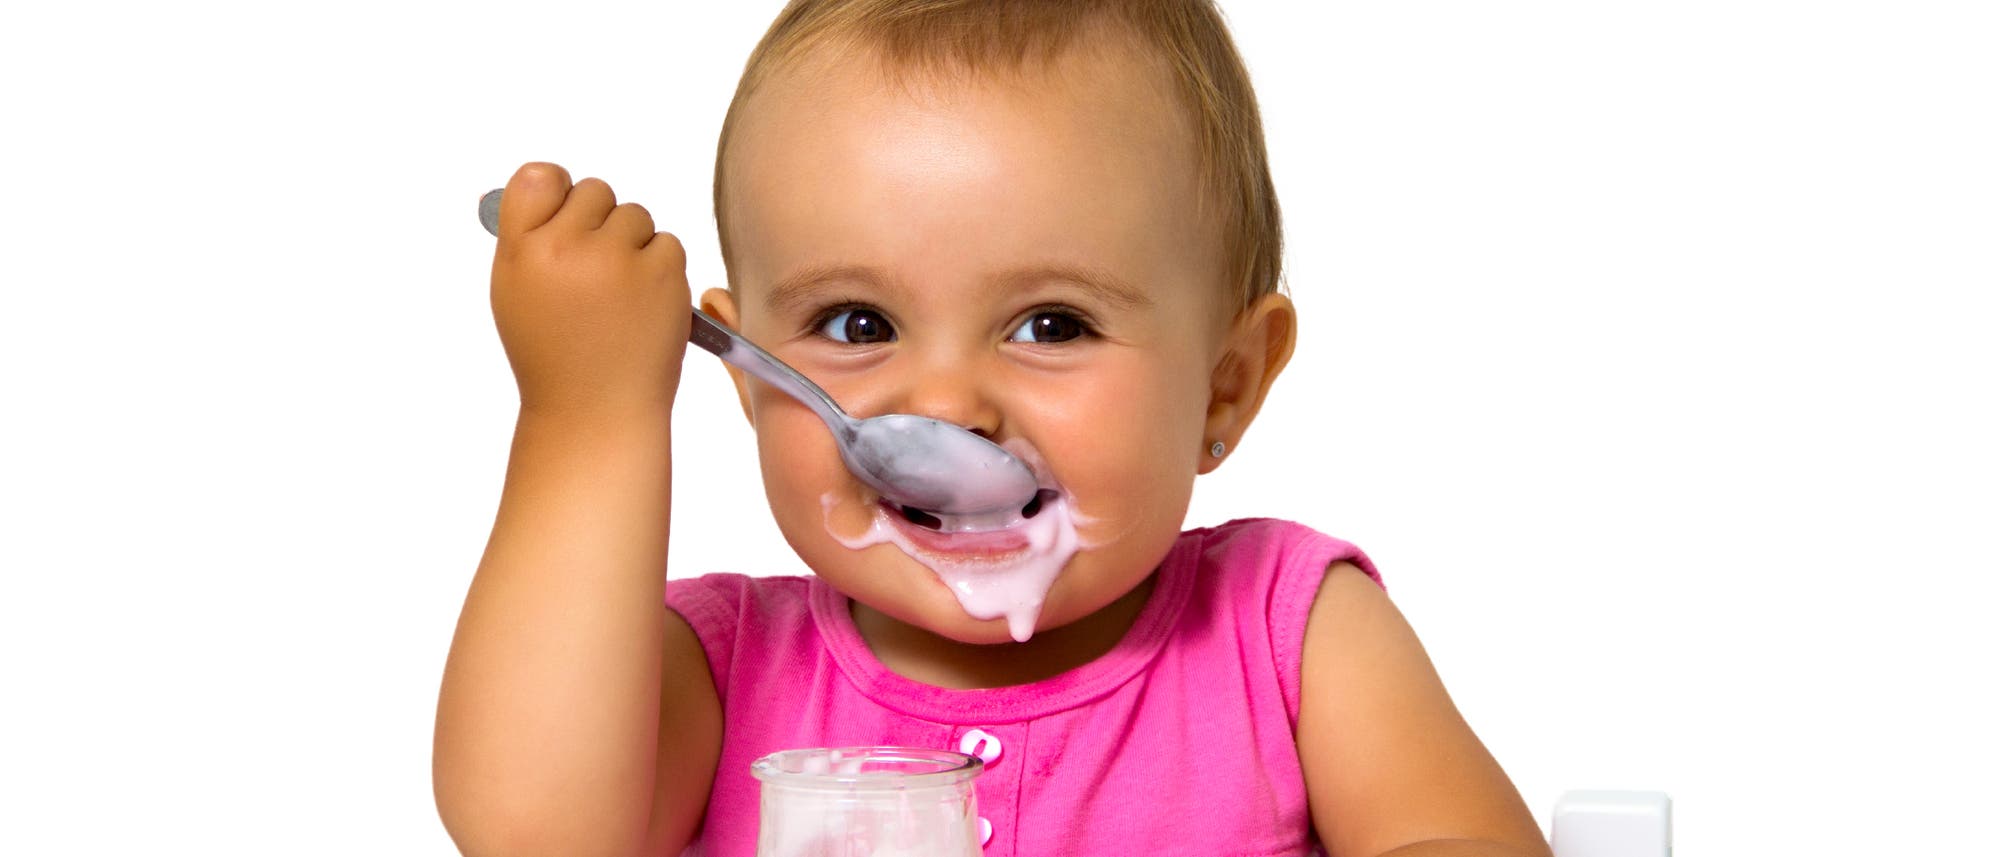 Joghurt fördert Darmflora